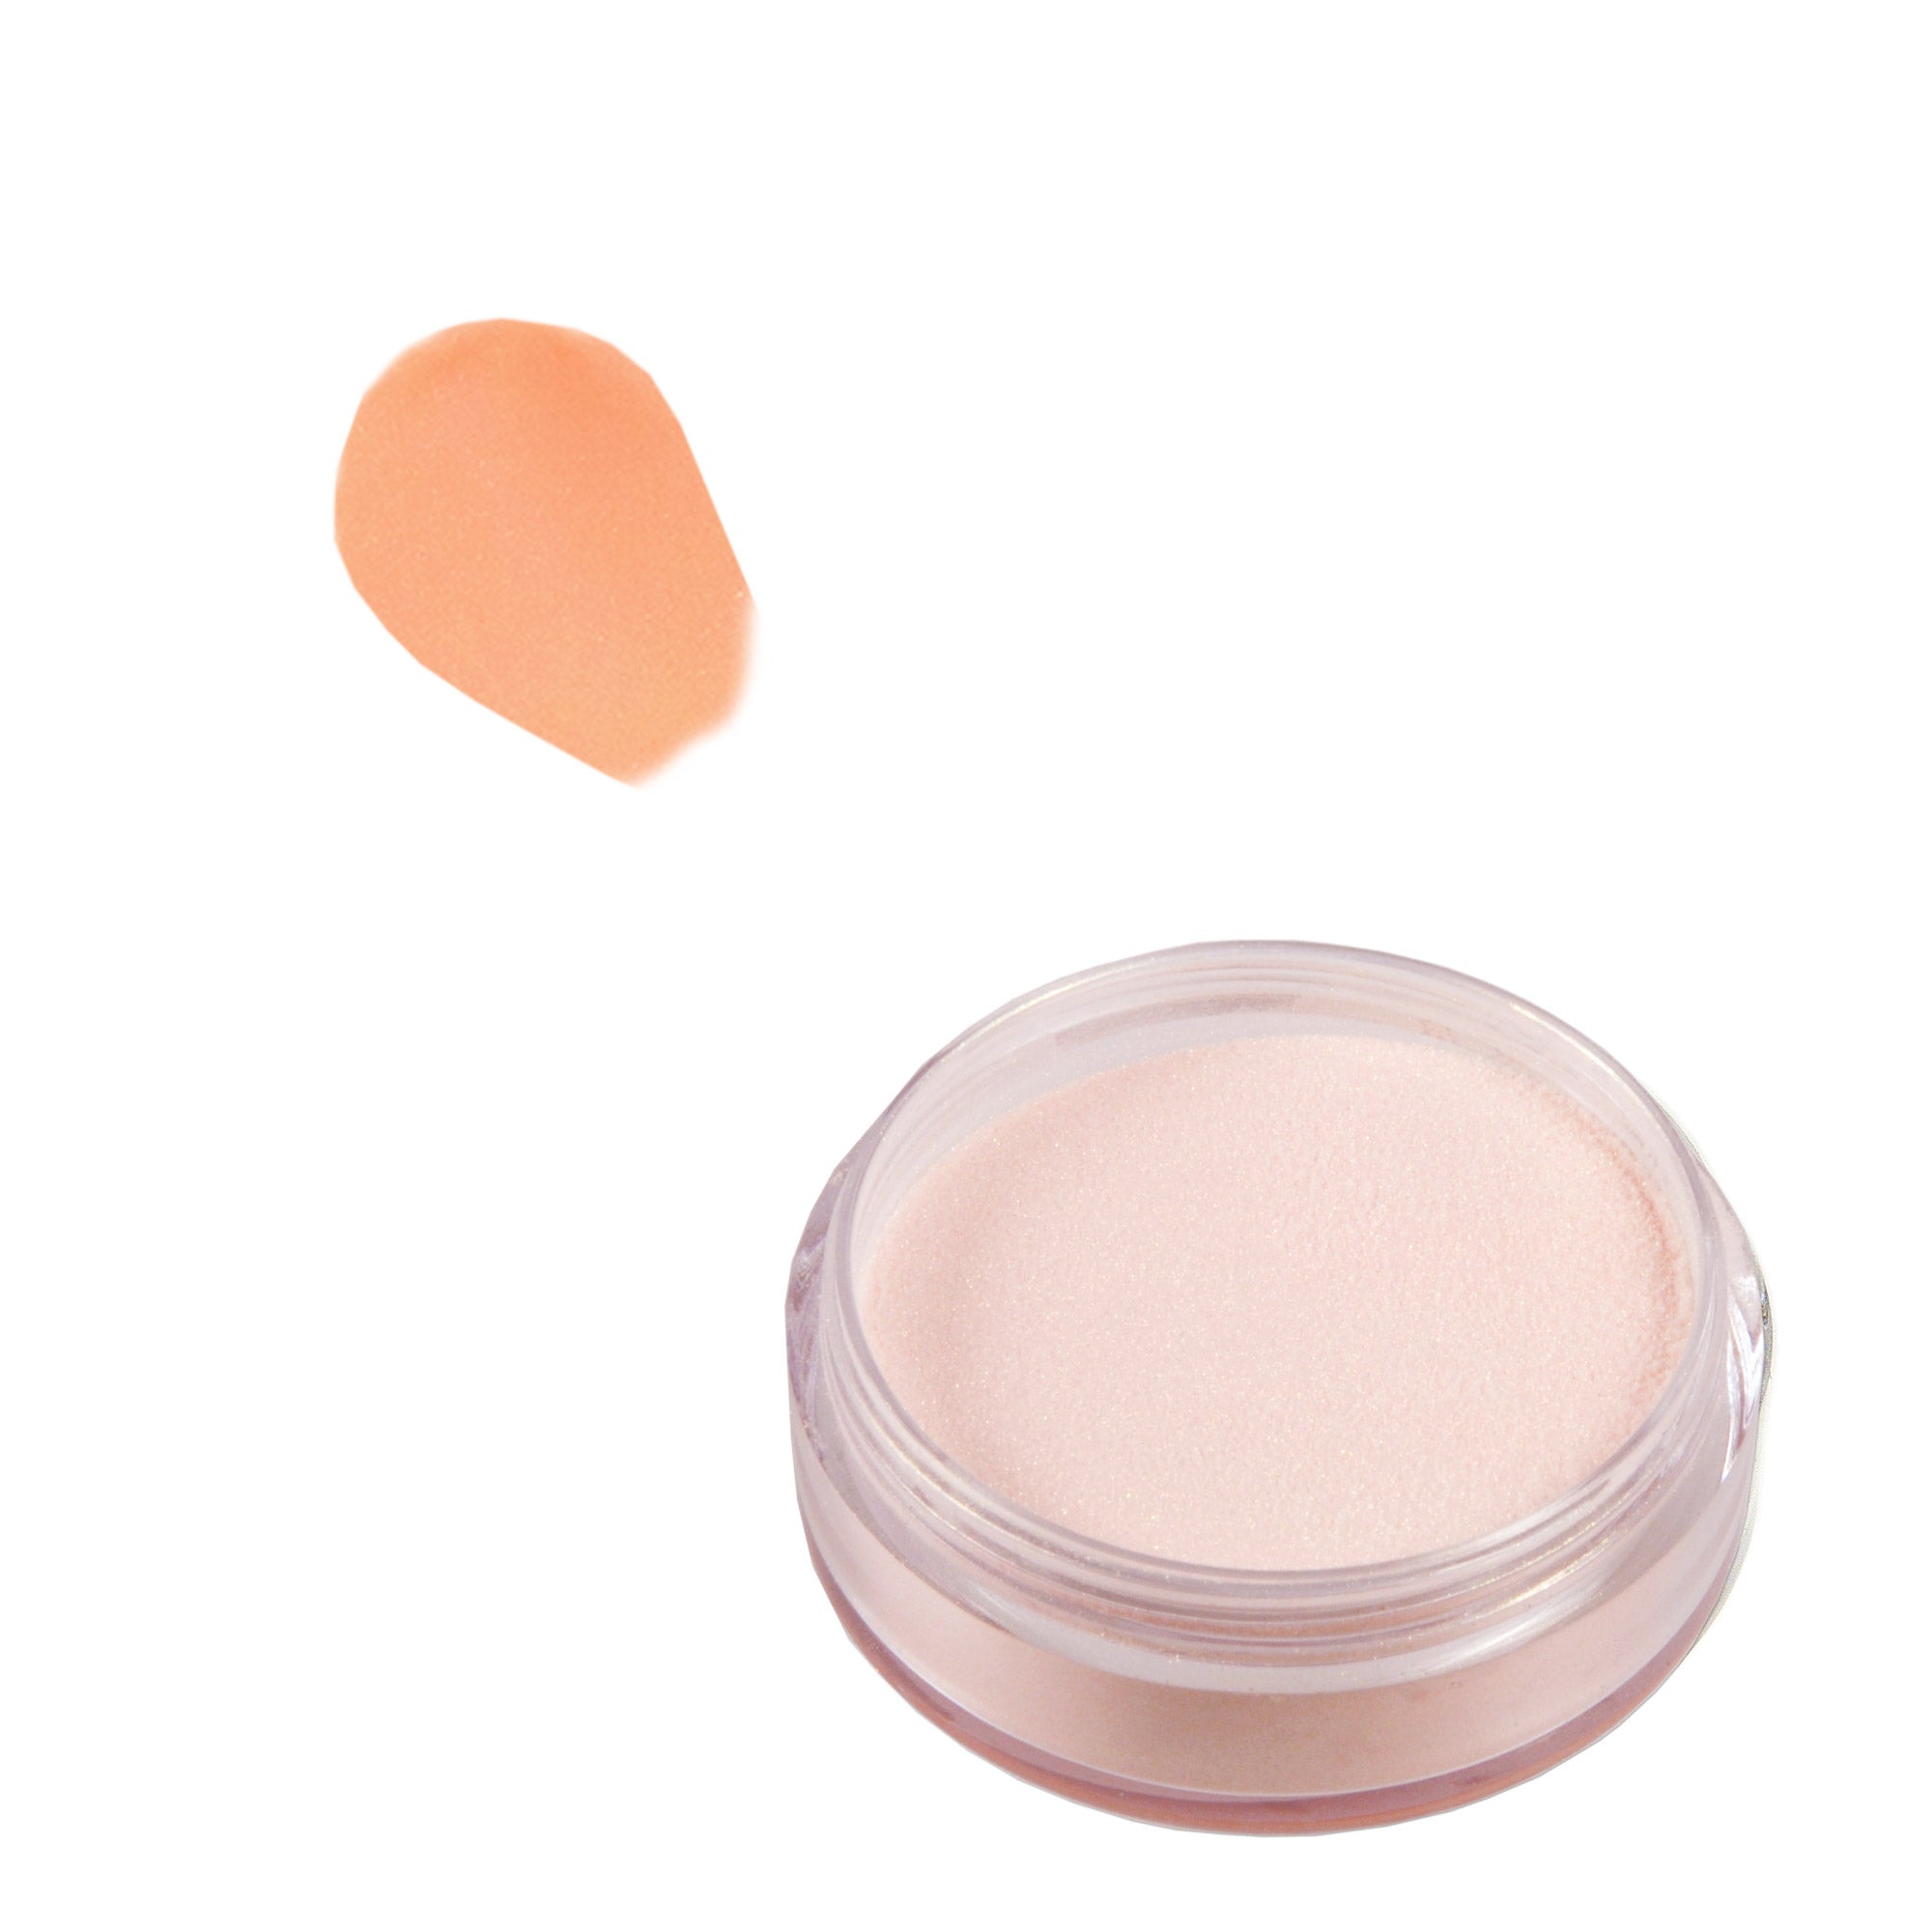 Acrylic Powder 10 g. - Pastel Orange